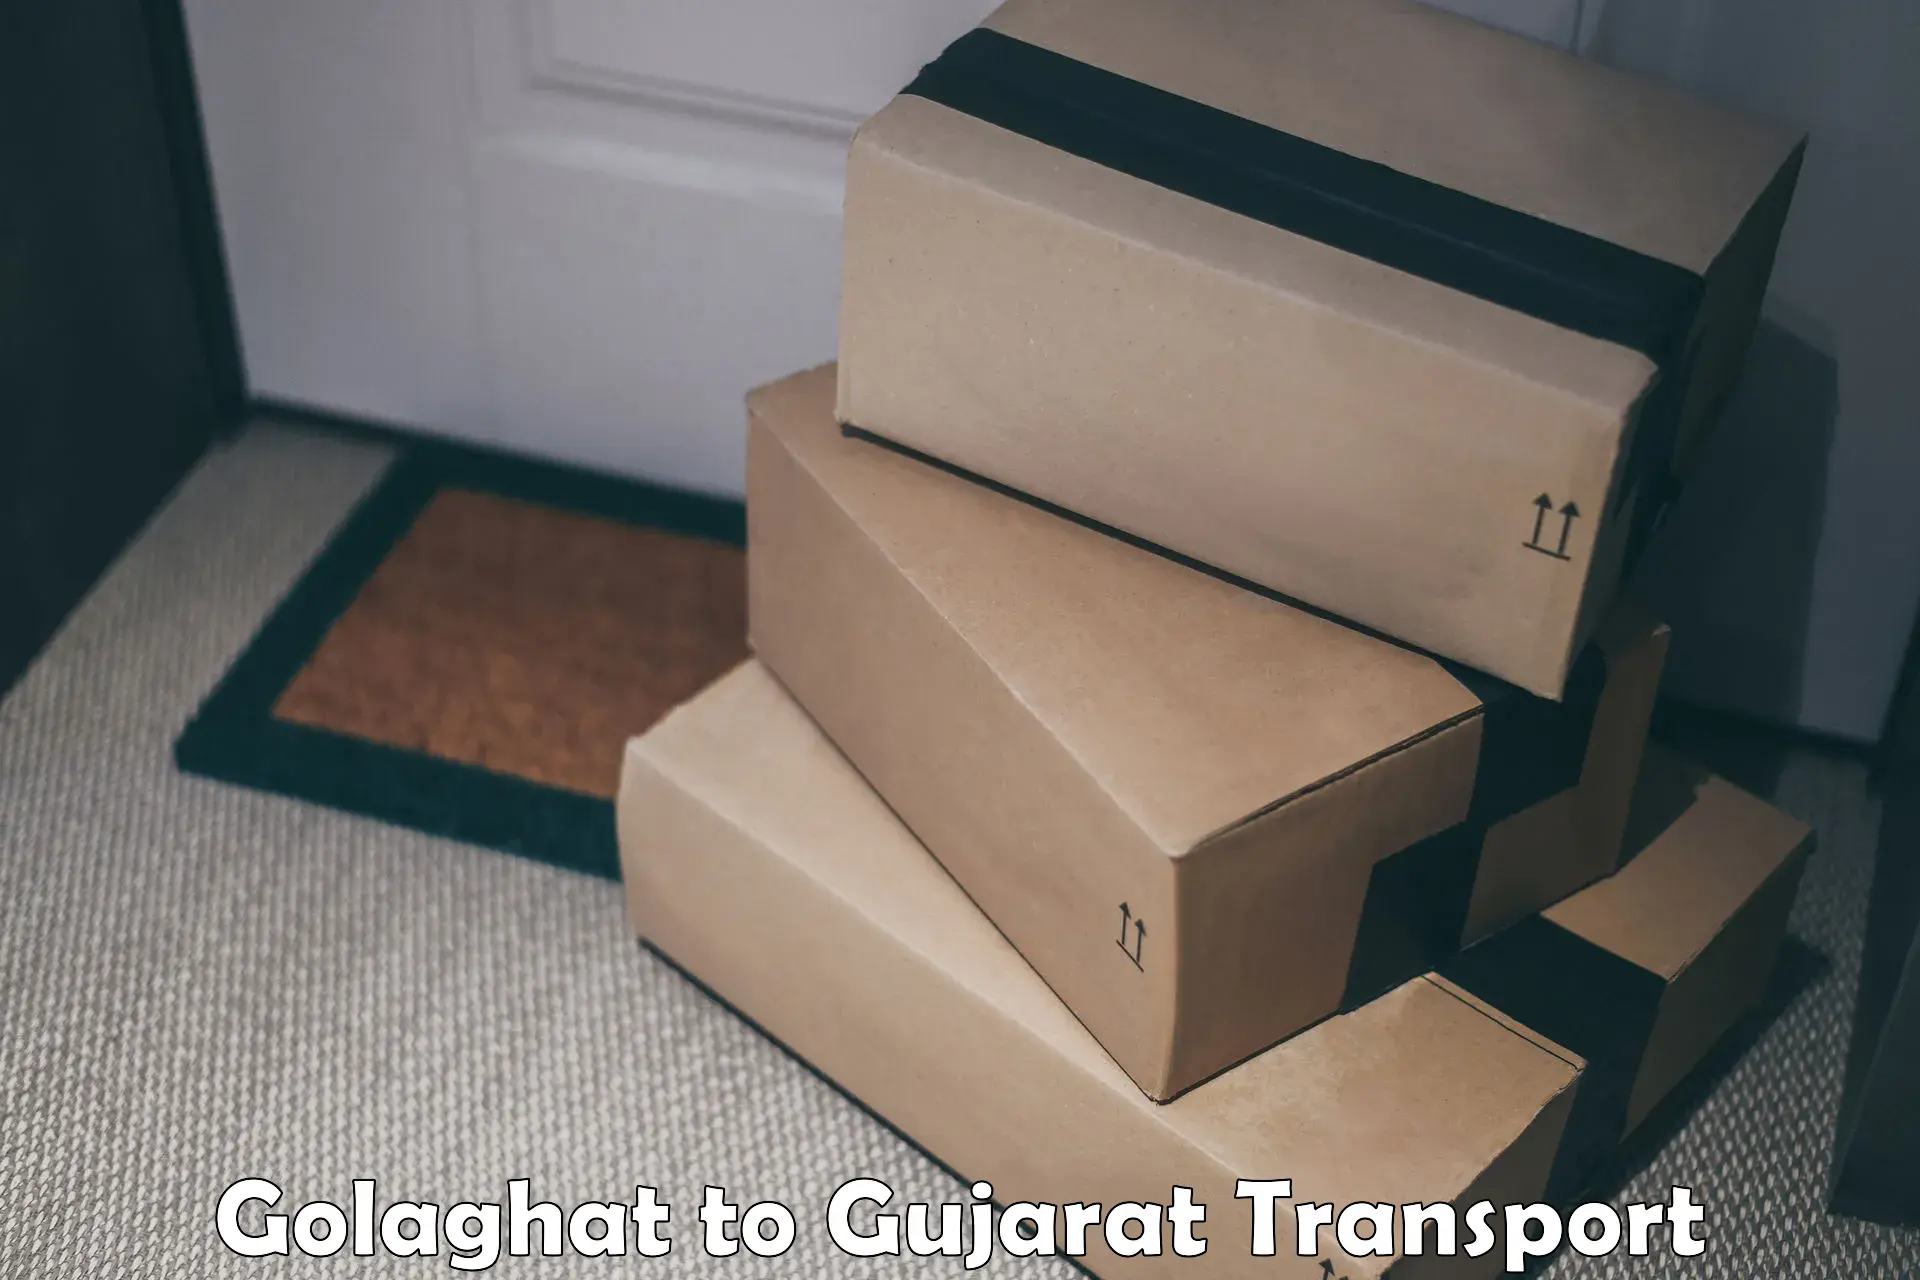 Online transport service Golaghat to Idar